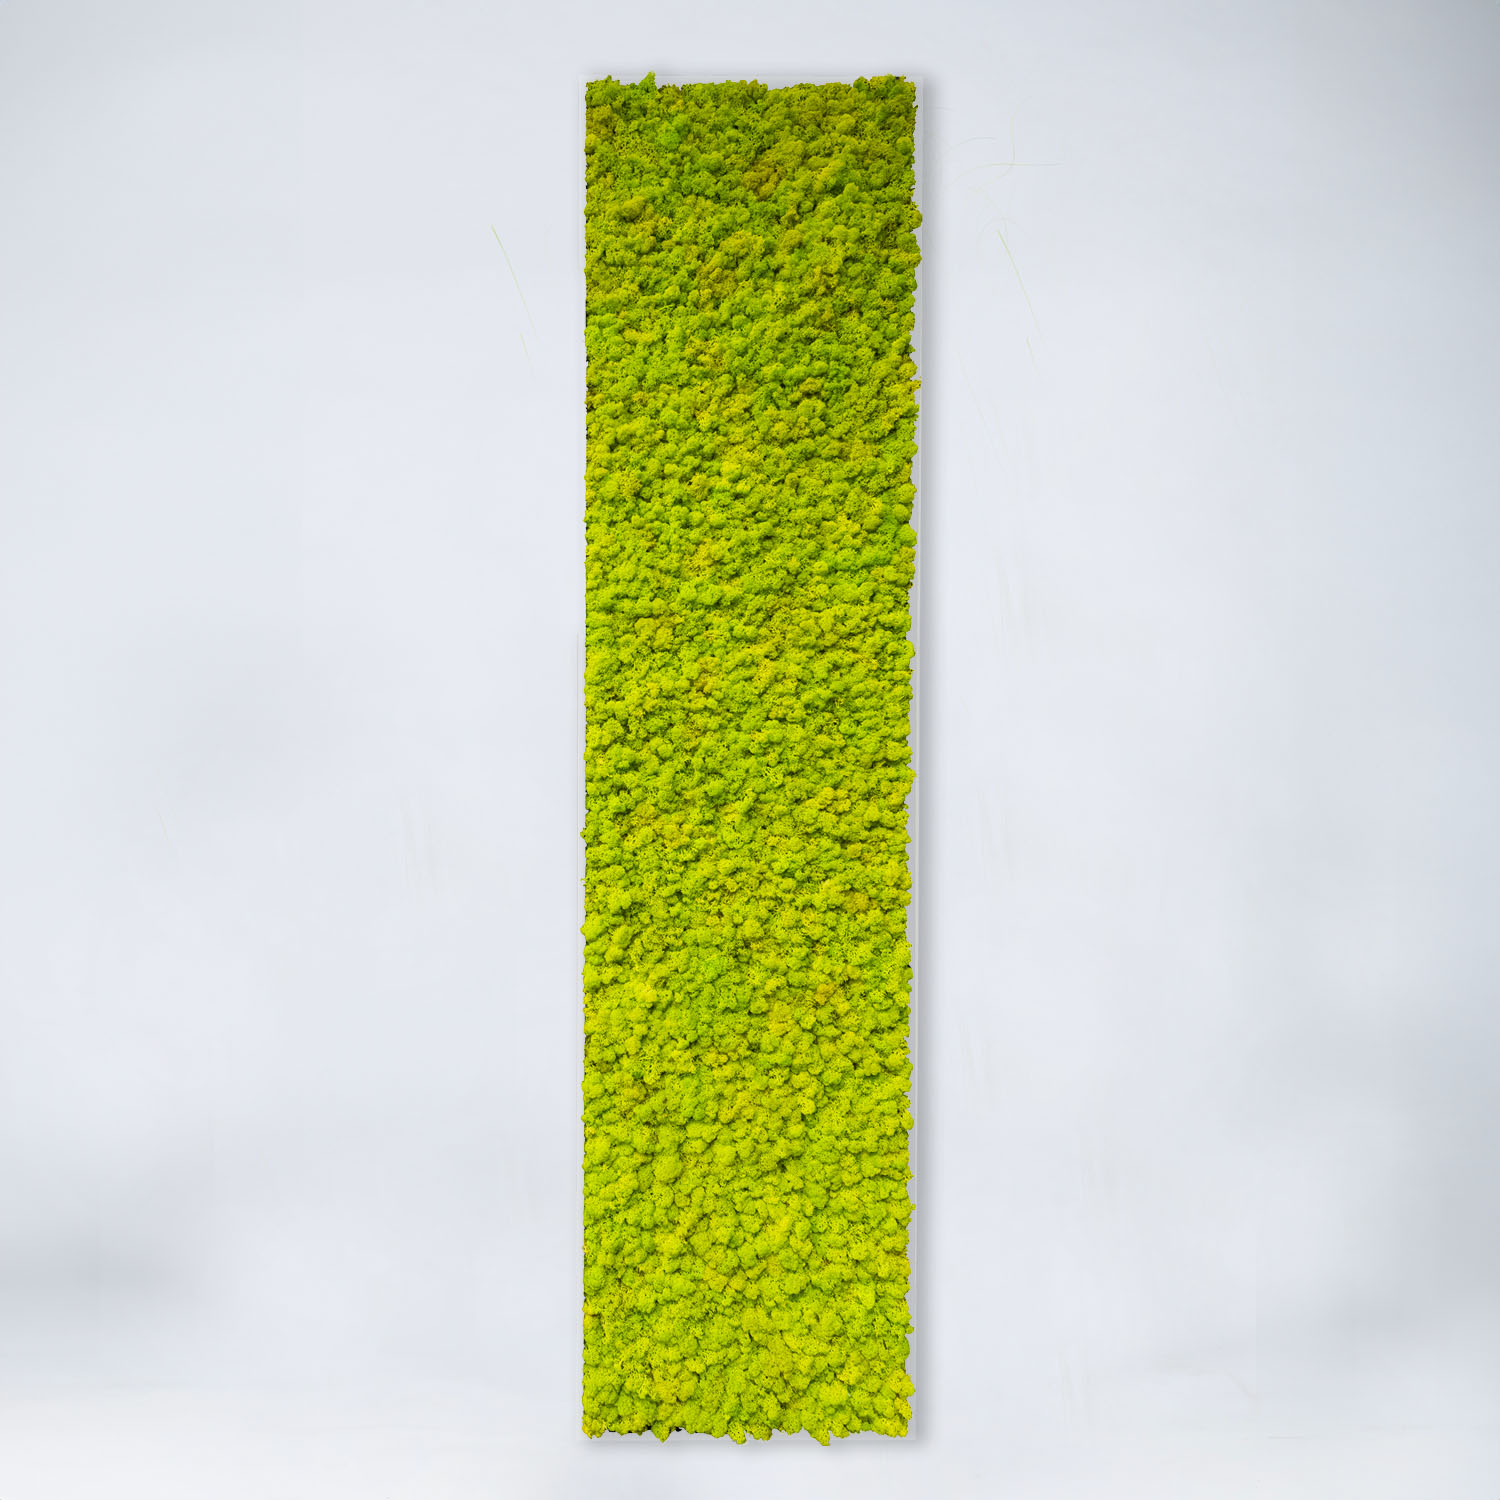 Tableau végétal allongé Lichen